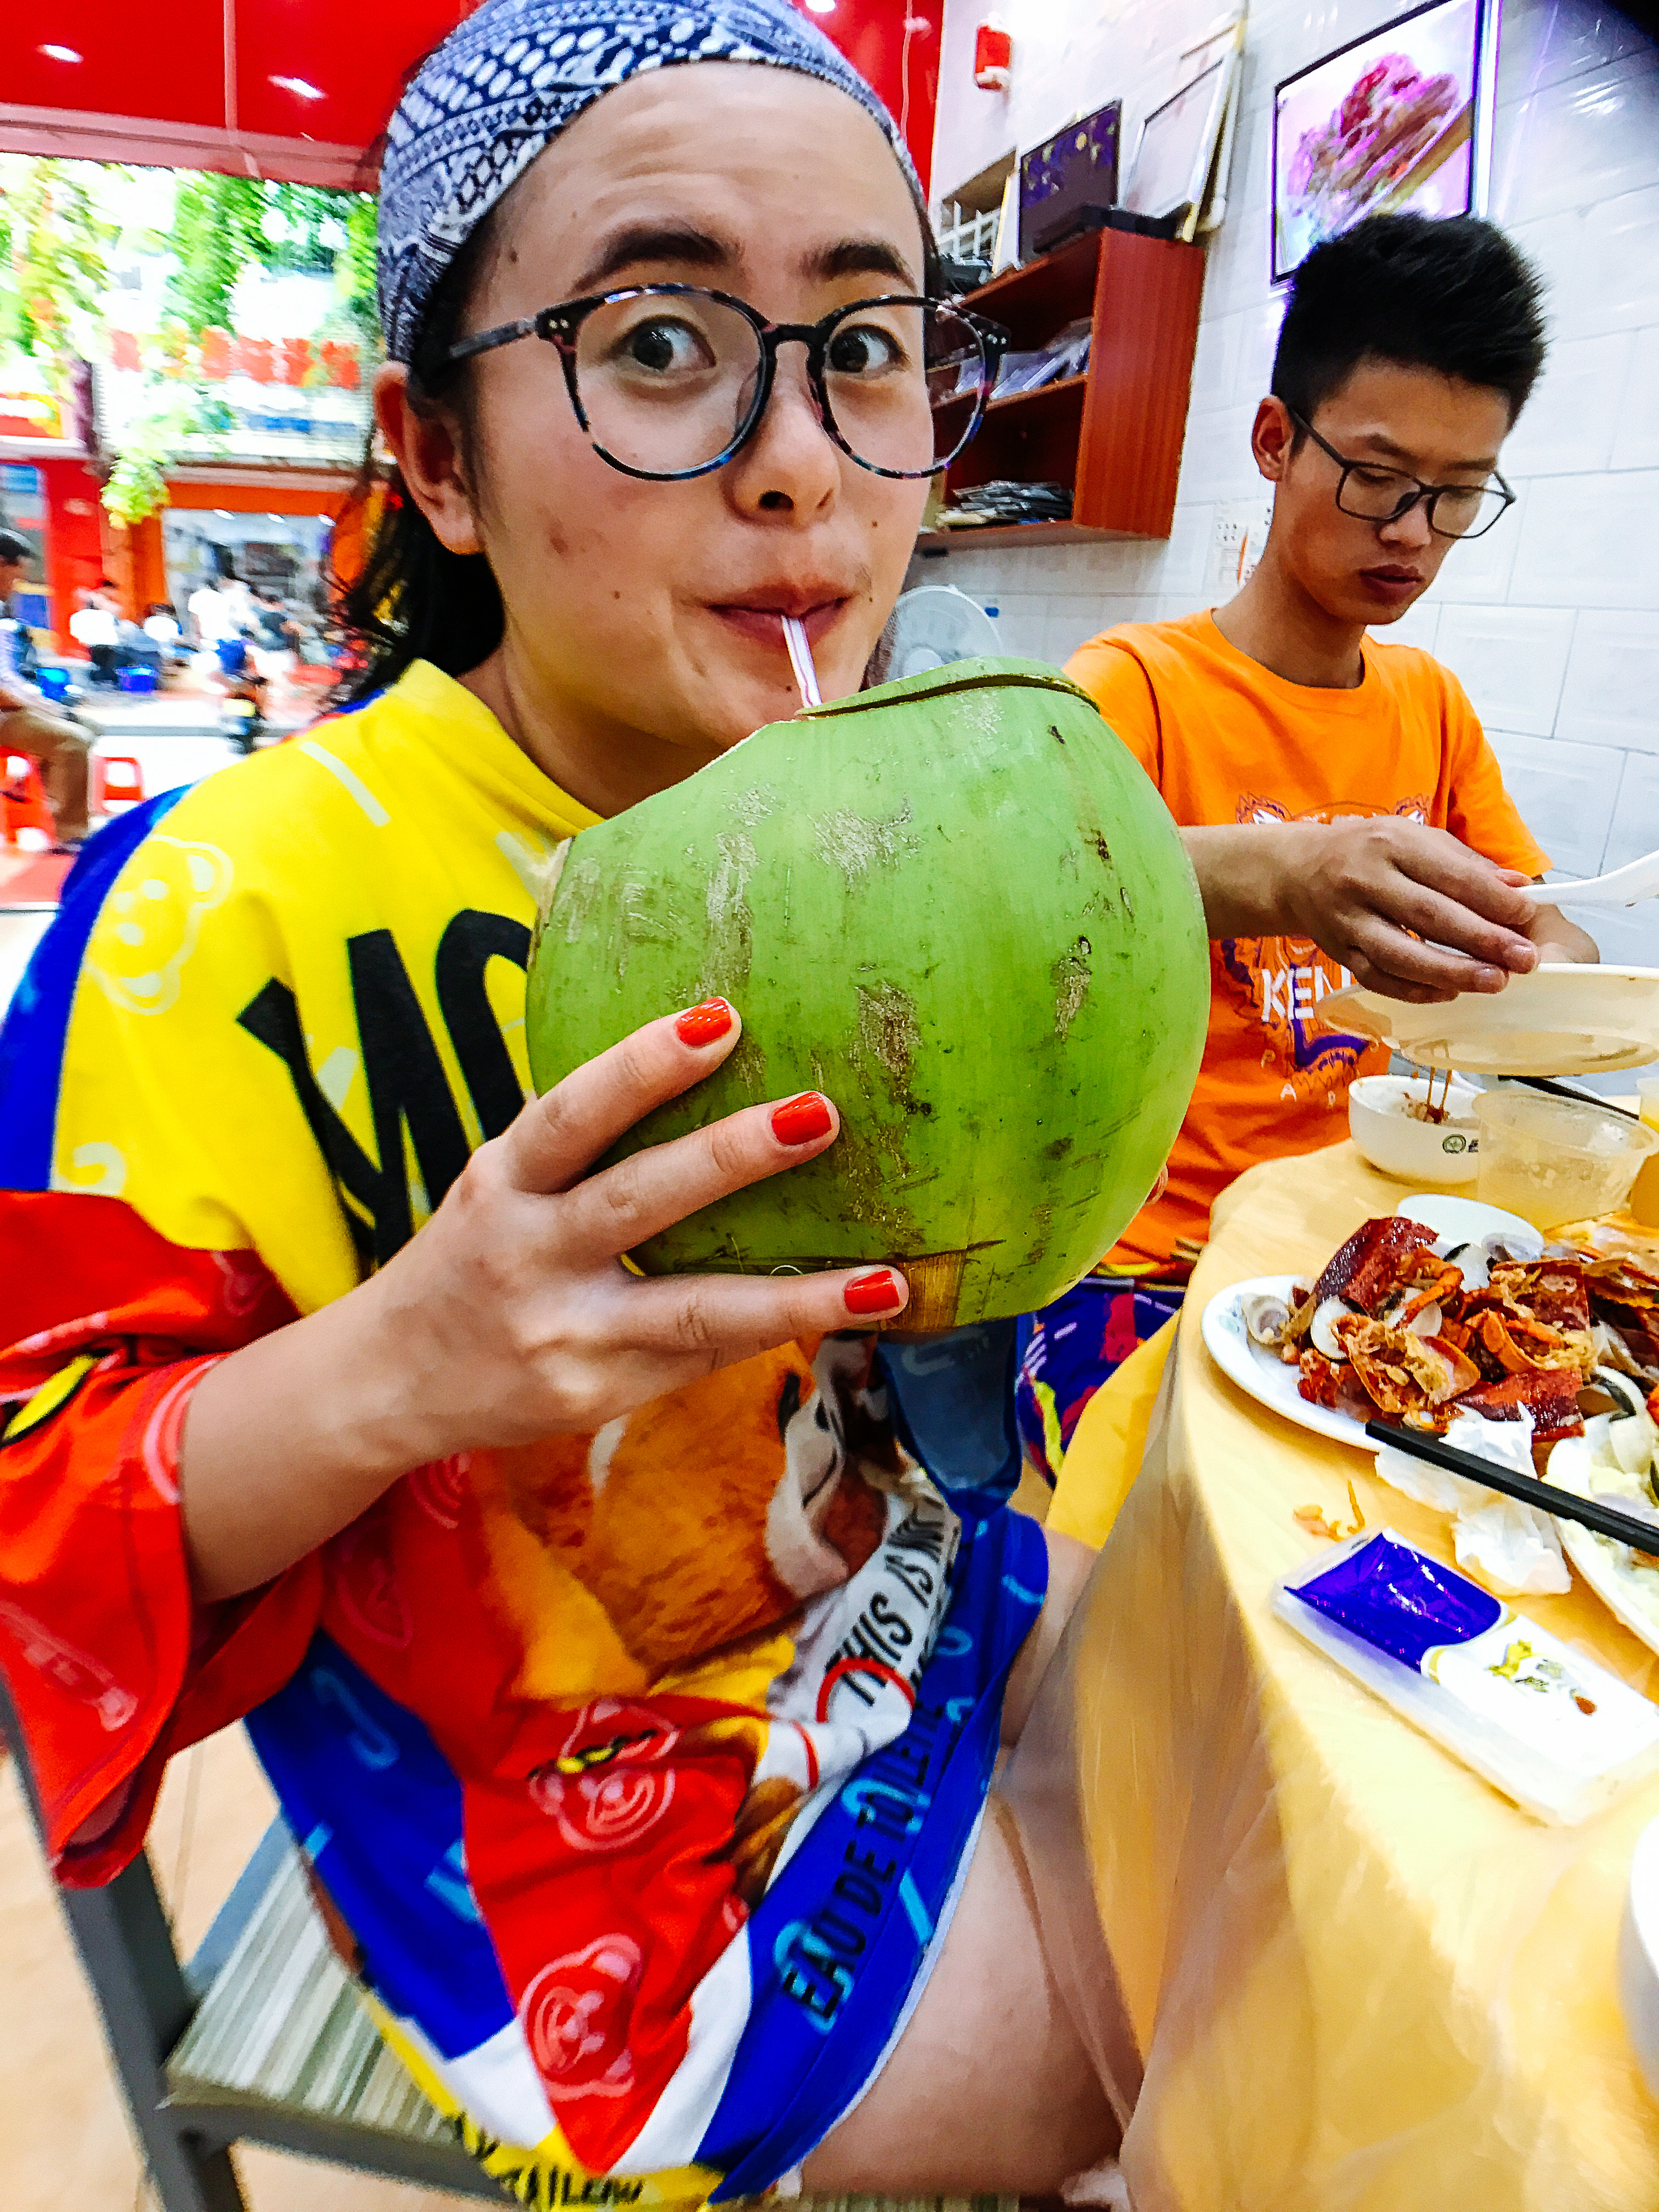 越南阿姨街头卖椰子，切椰子像切豆腐一样，太牛了 2#越南椰子 #越南水果-美食视频-搜狐视频